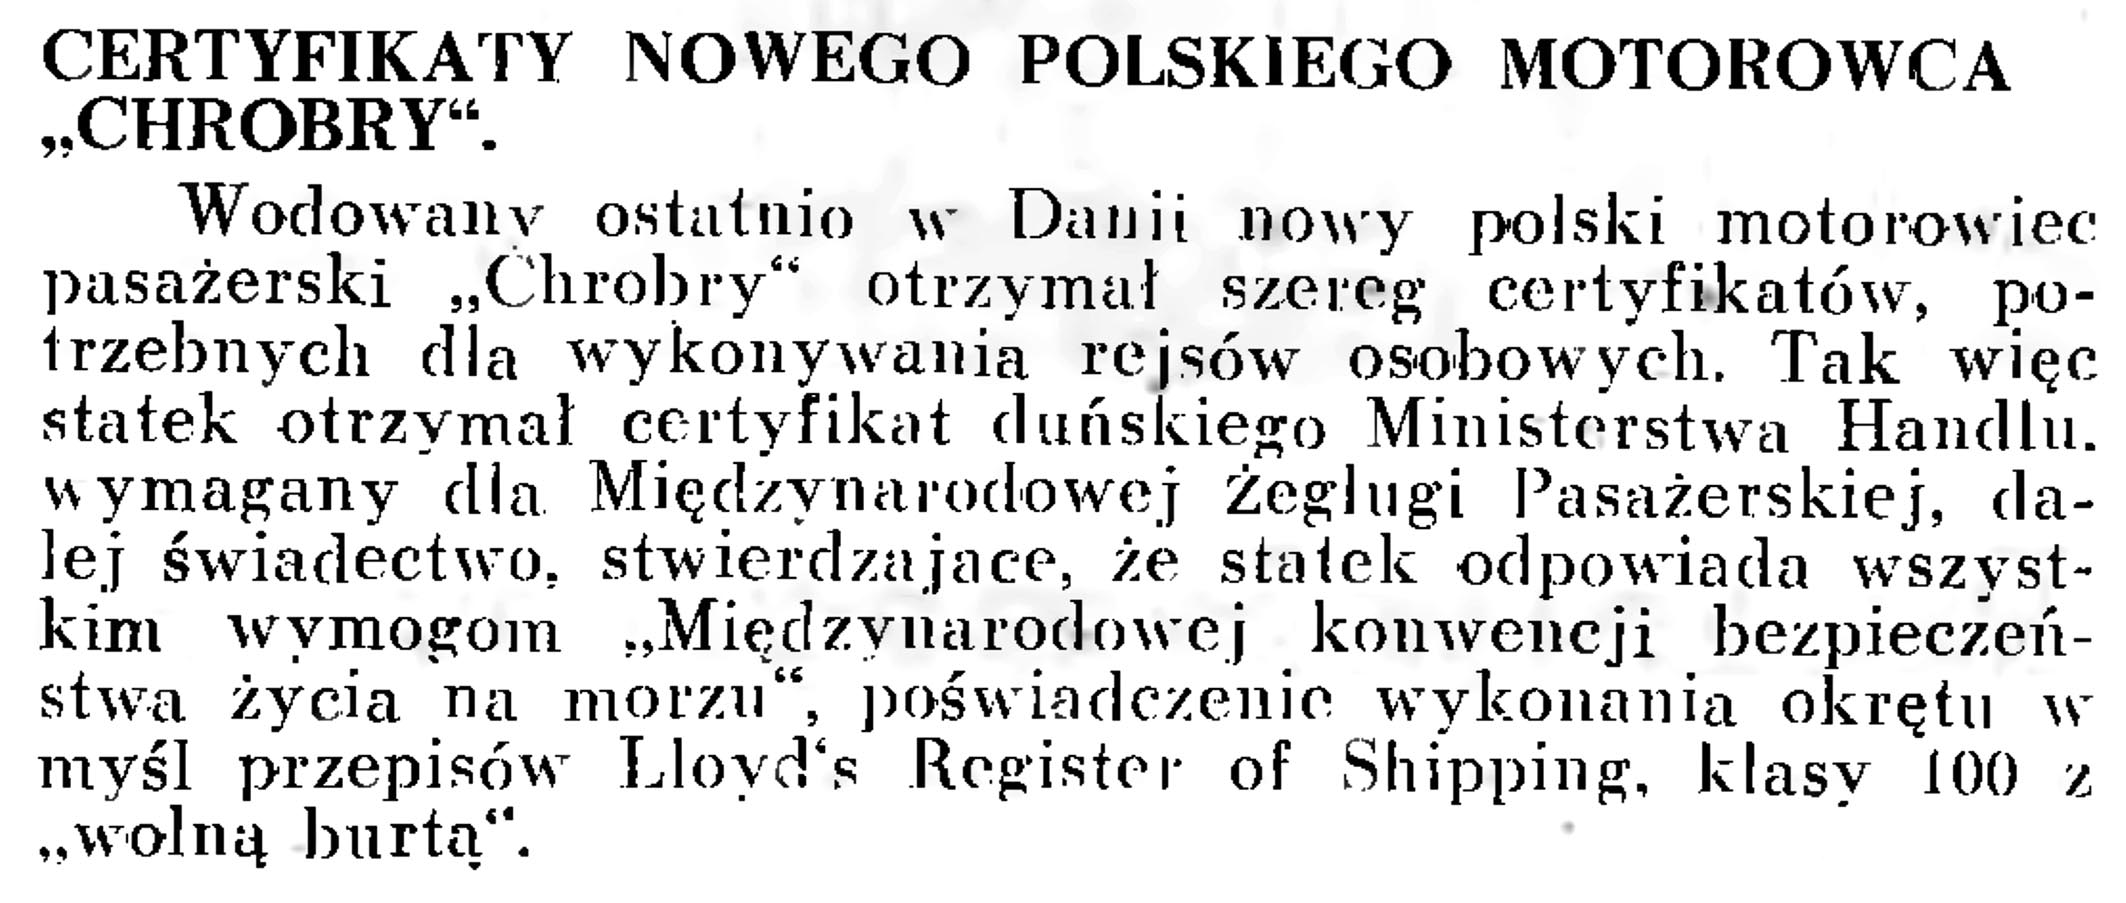 Certyfikaty nowego polskiego motorowca "Chrobry" // Wiadomości Portowe. - 1939, nr 3, s. 18